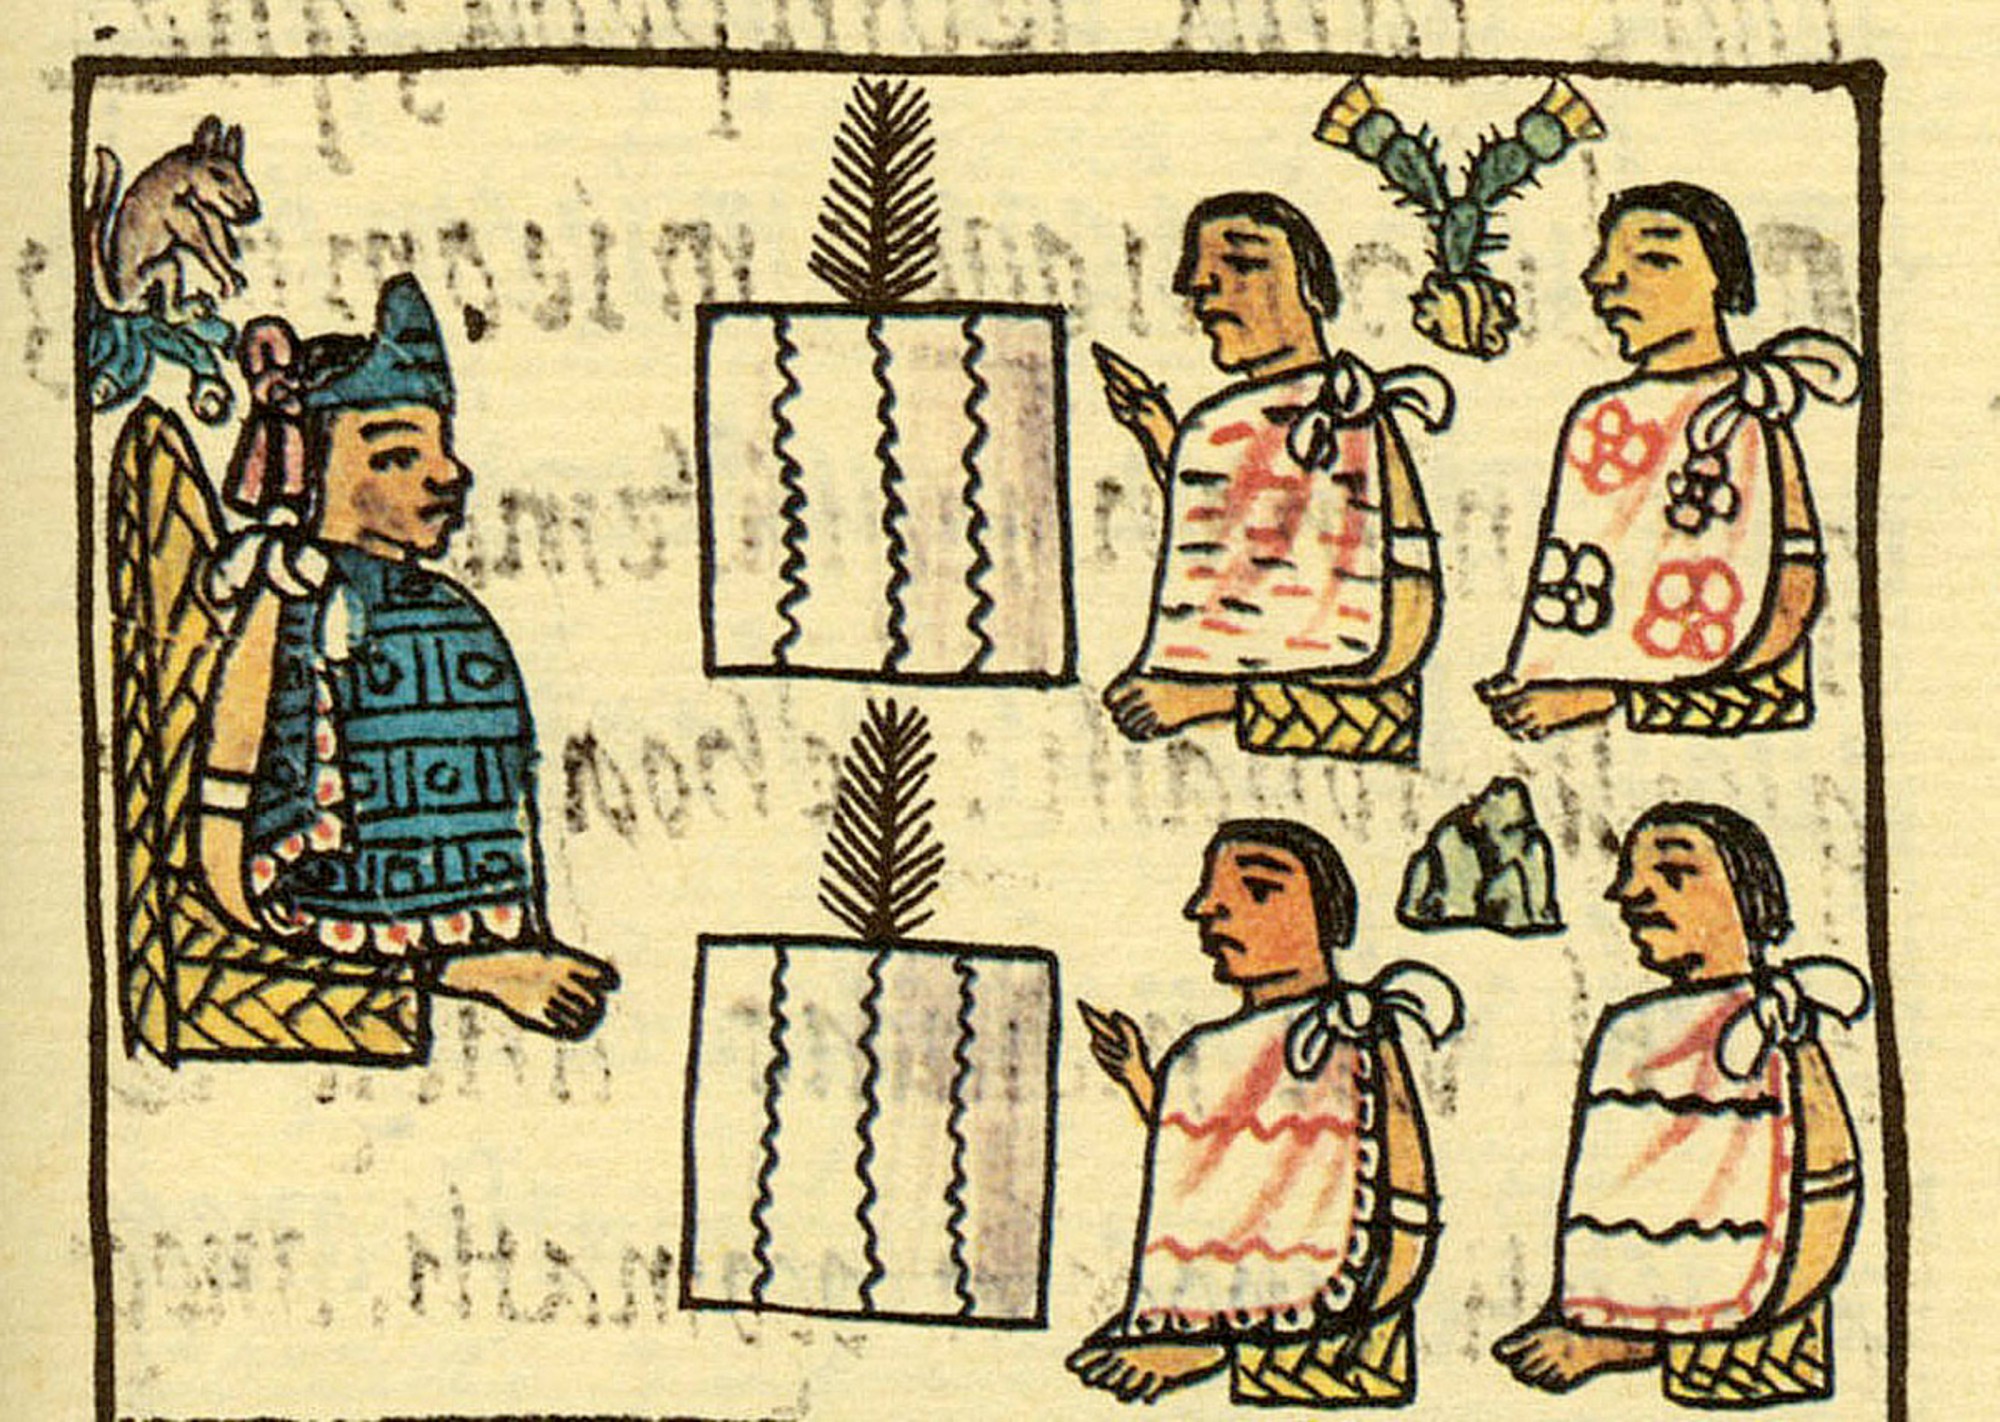 Aprende Náhuatl cuenta con dos modalidades de aprendizaje: náhuatl clásico y moderno.